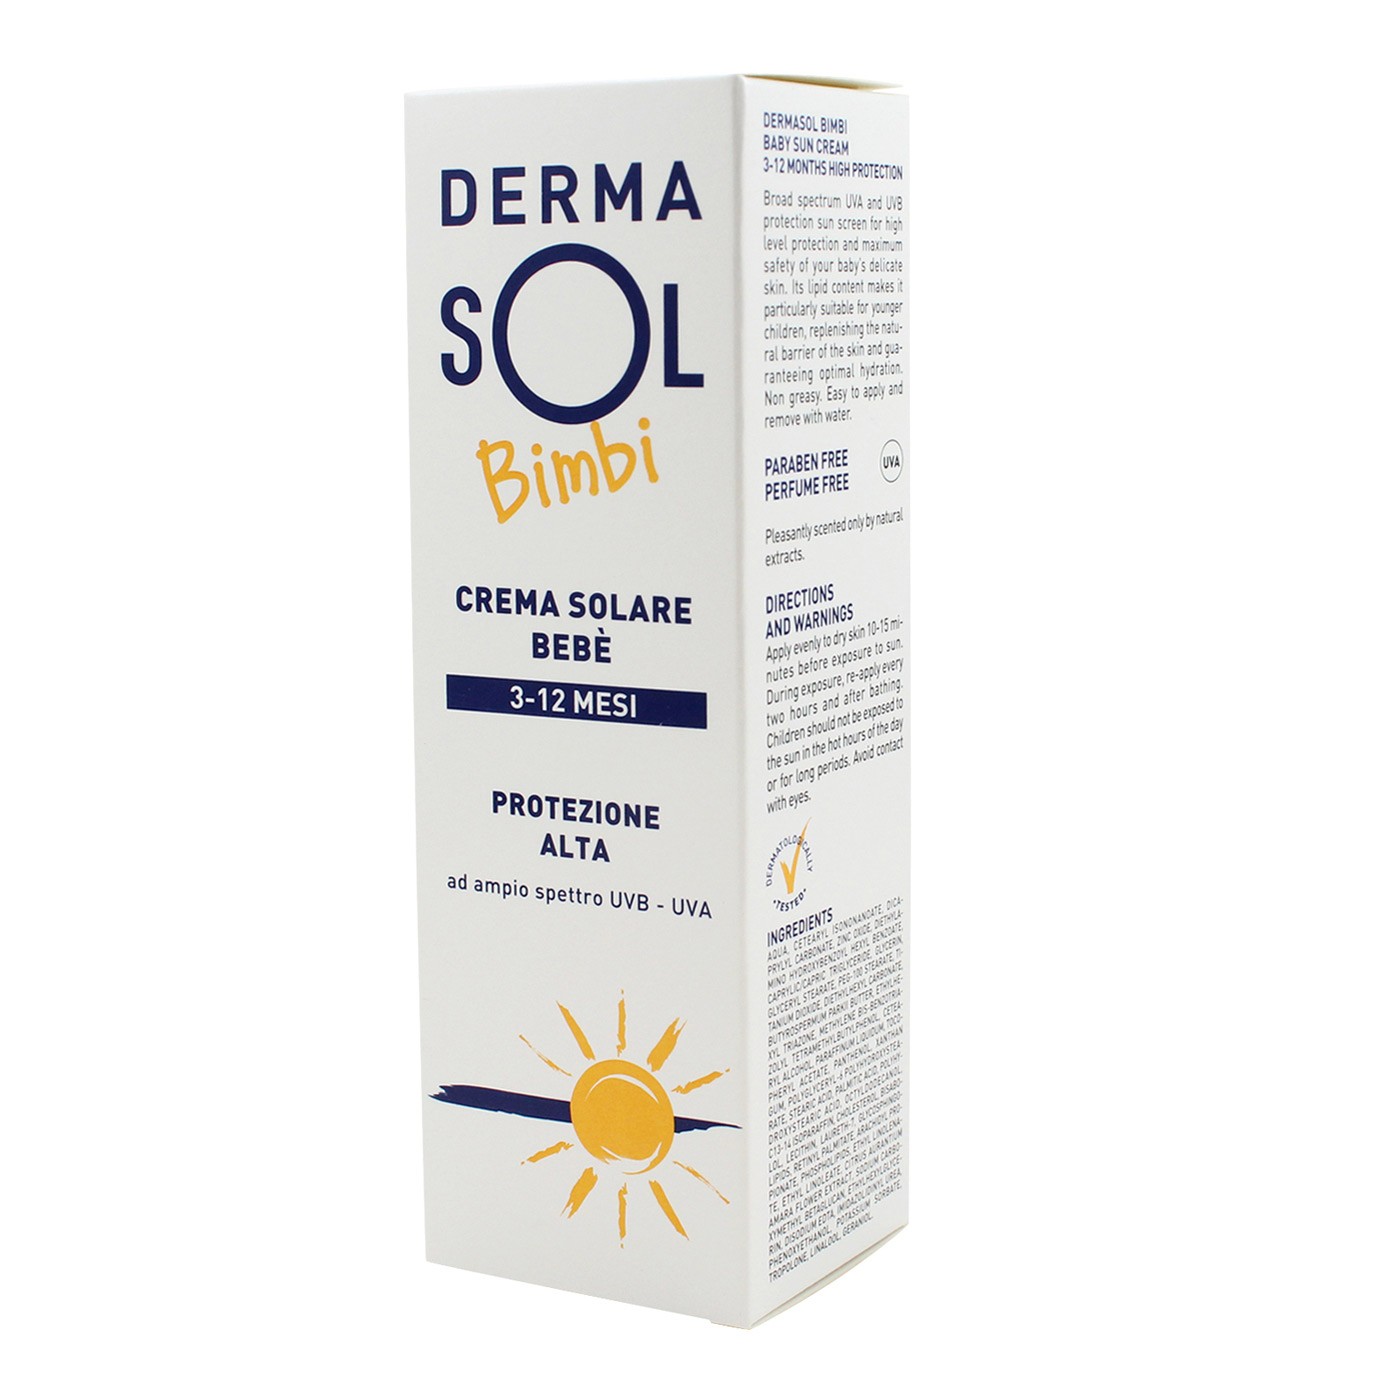 DERMASOL BIMBI crema solare per la fotoprotezione del neonato 75 ml.